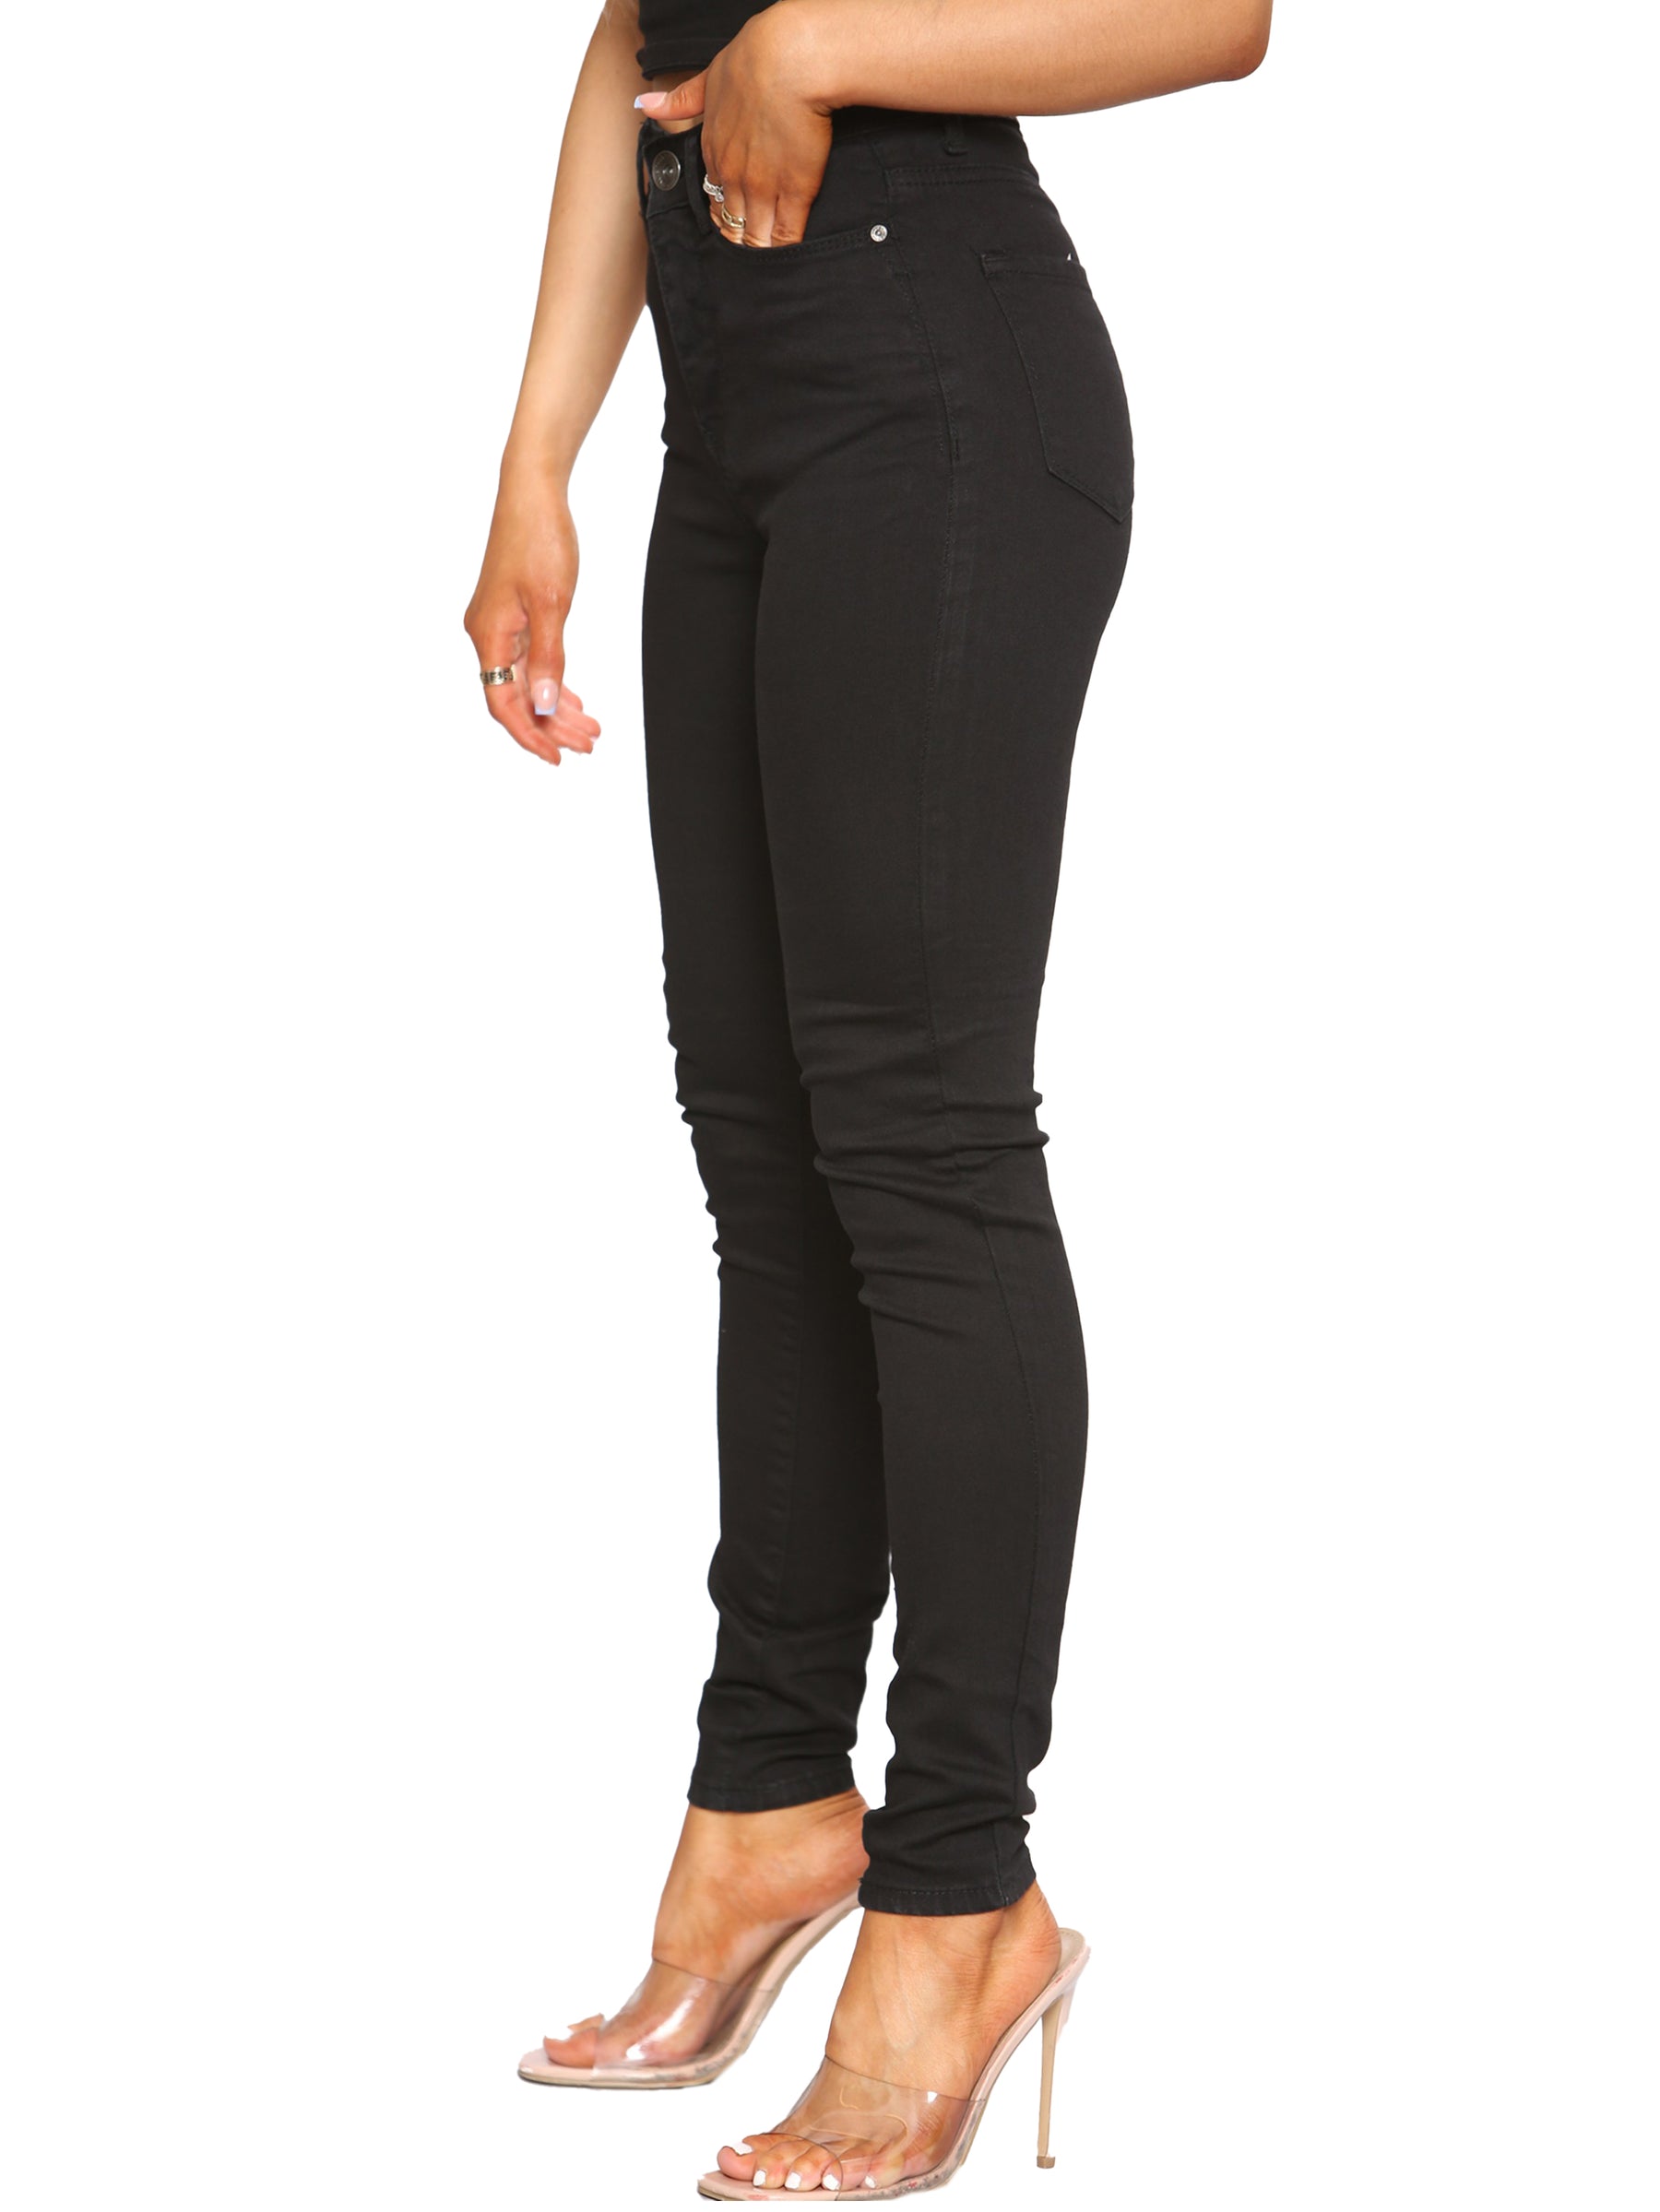 EZL416 Womens Skinny Stretch Denim Jeans UK Size 8-20 | Enzo Designer Womenswear ENZO RAWDENIM